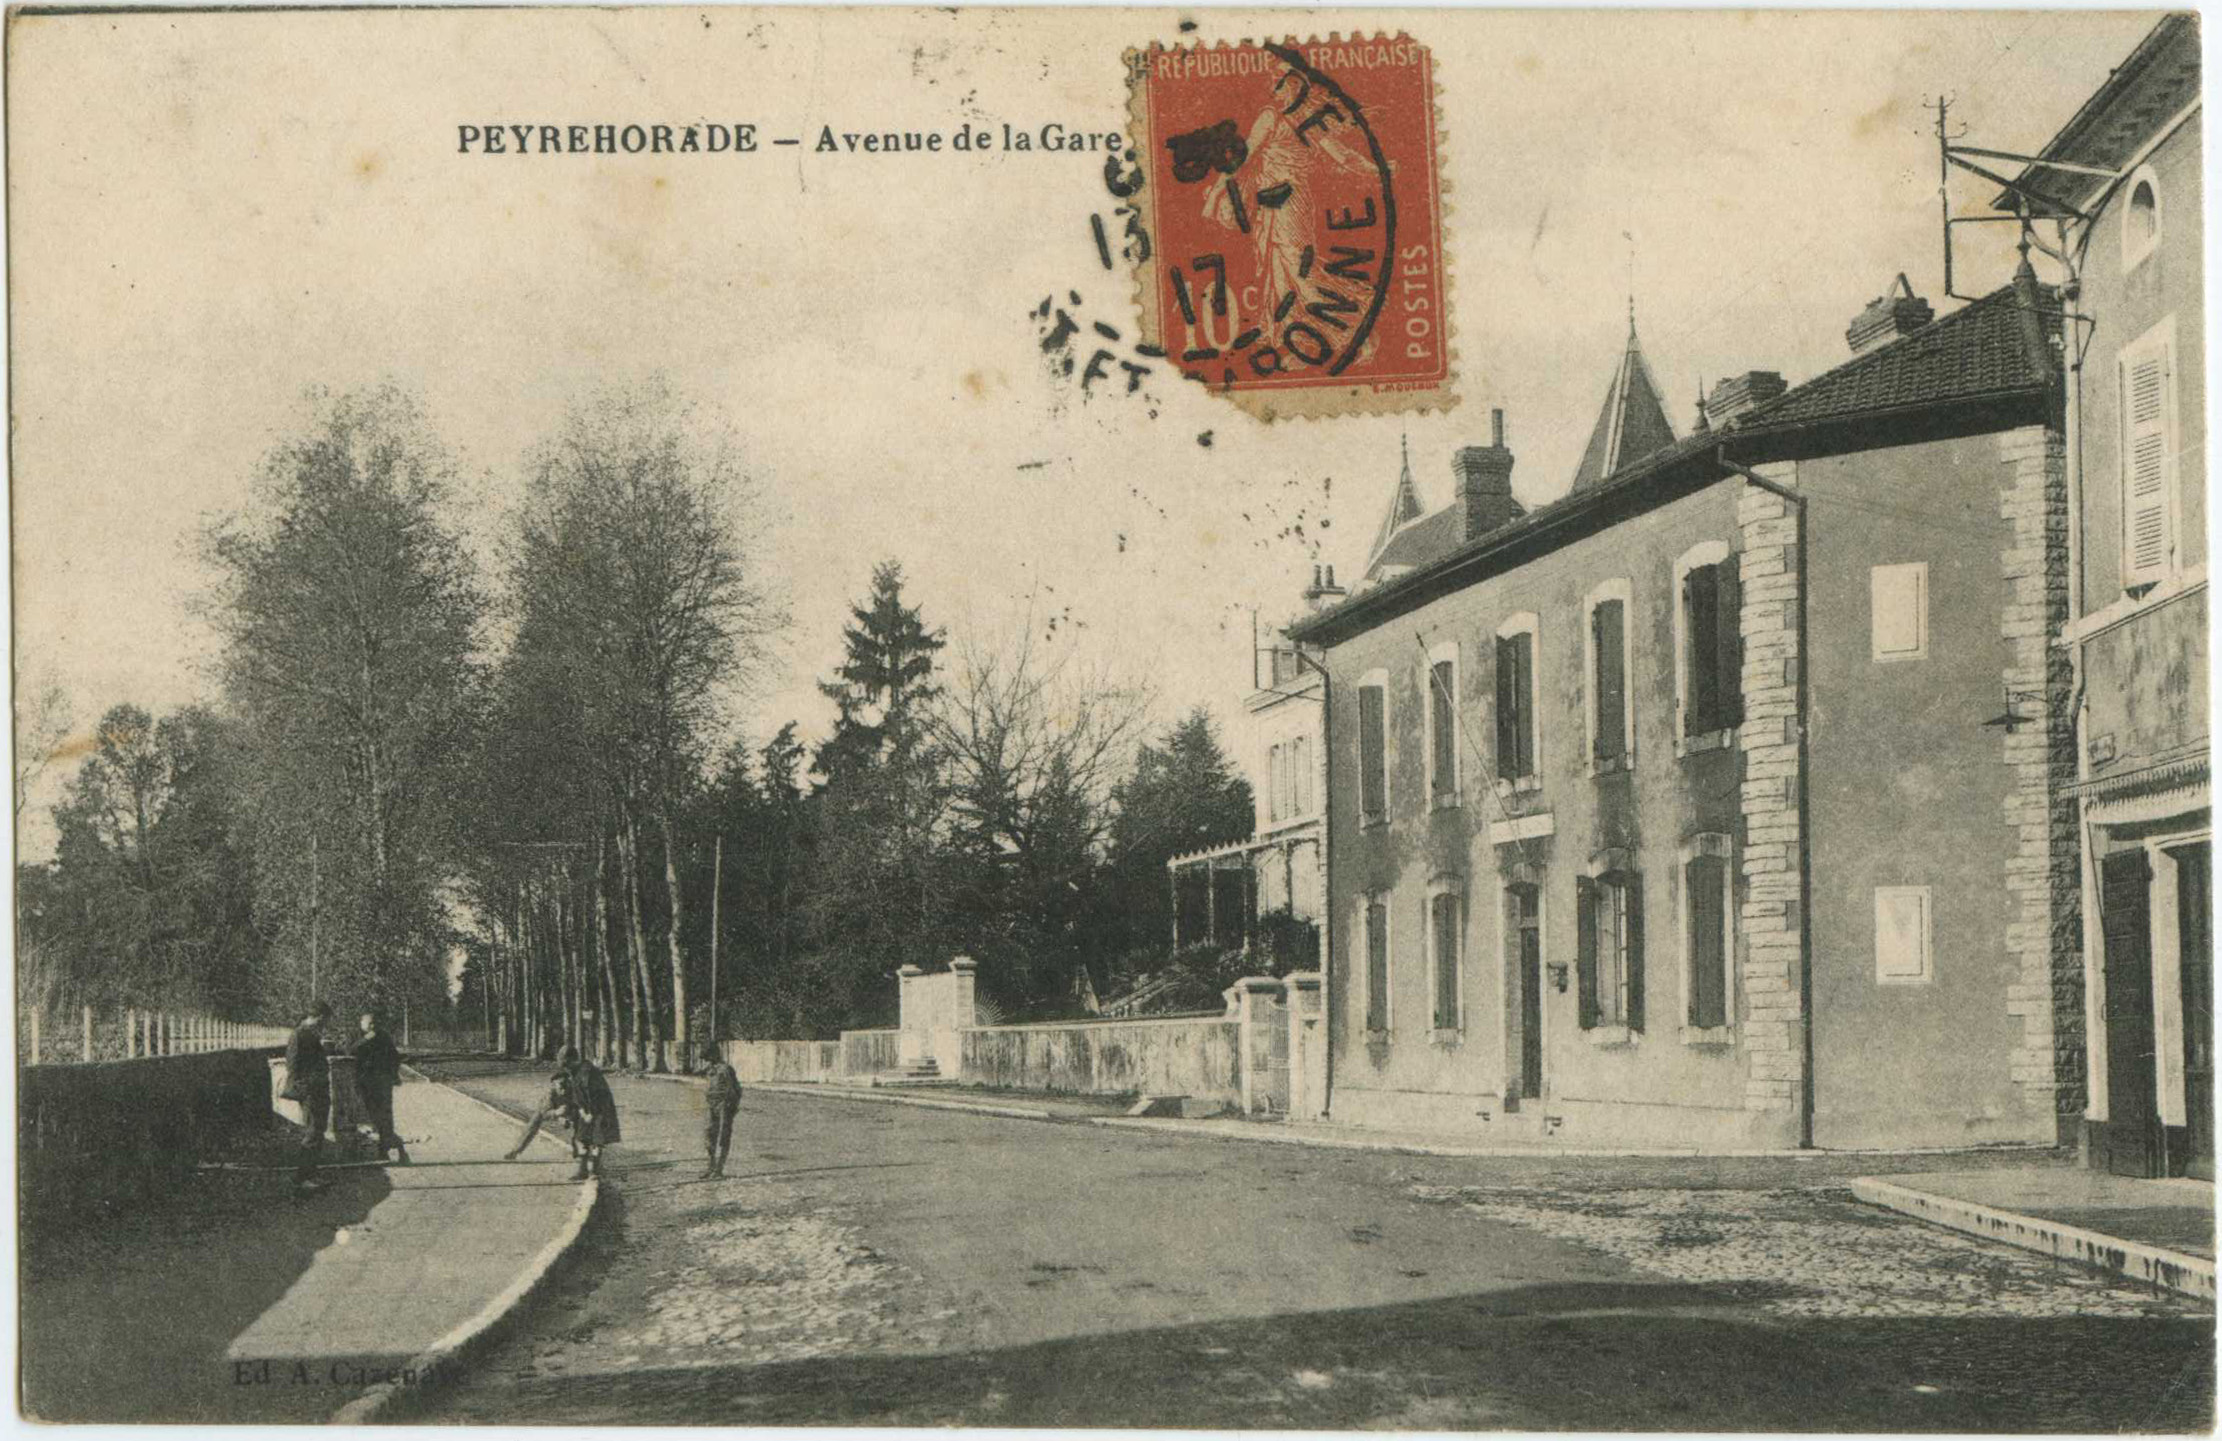 Peyrehorade - Avenue de la Gare